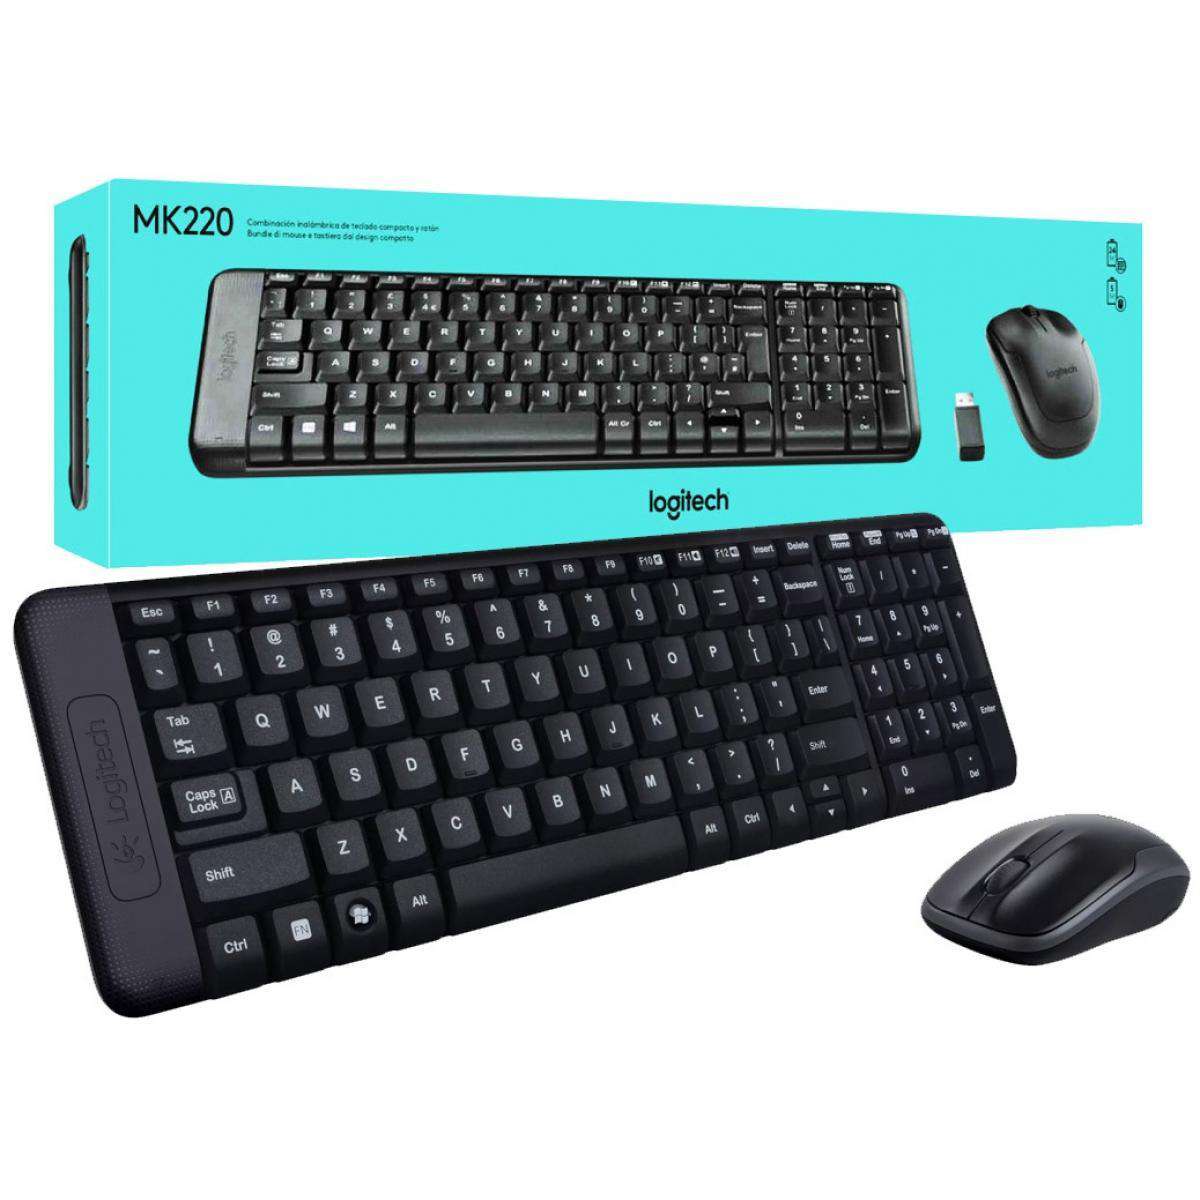 Logitech MK220 combo wireless keyboard and mouse